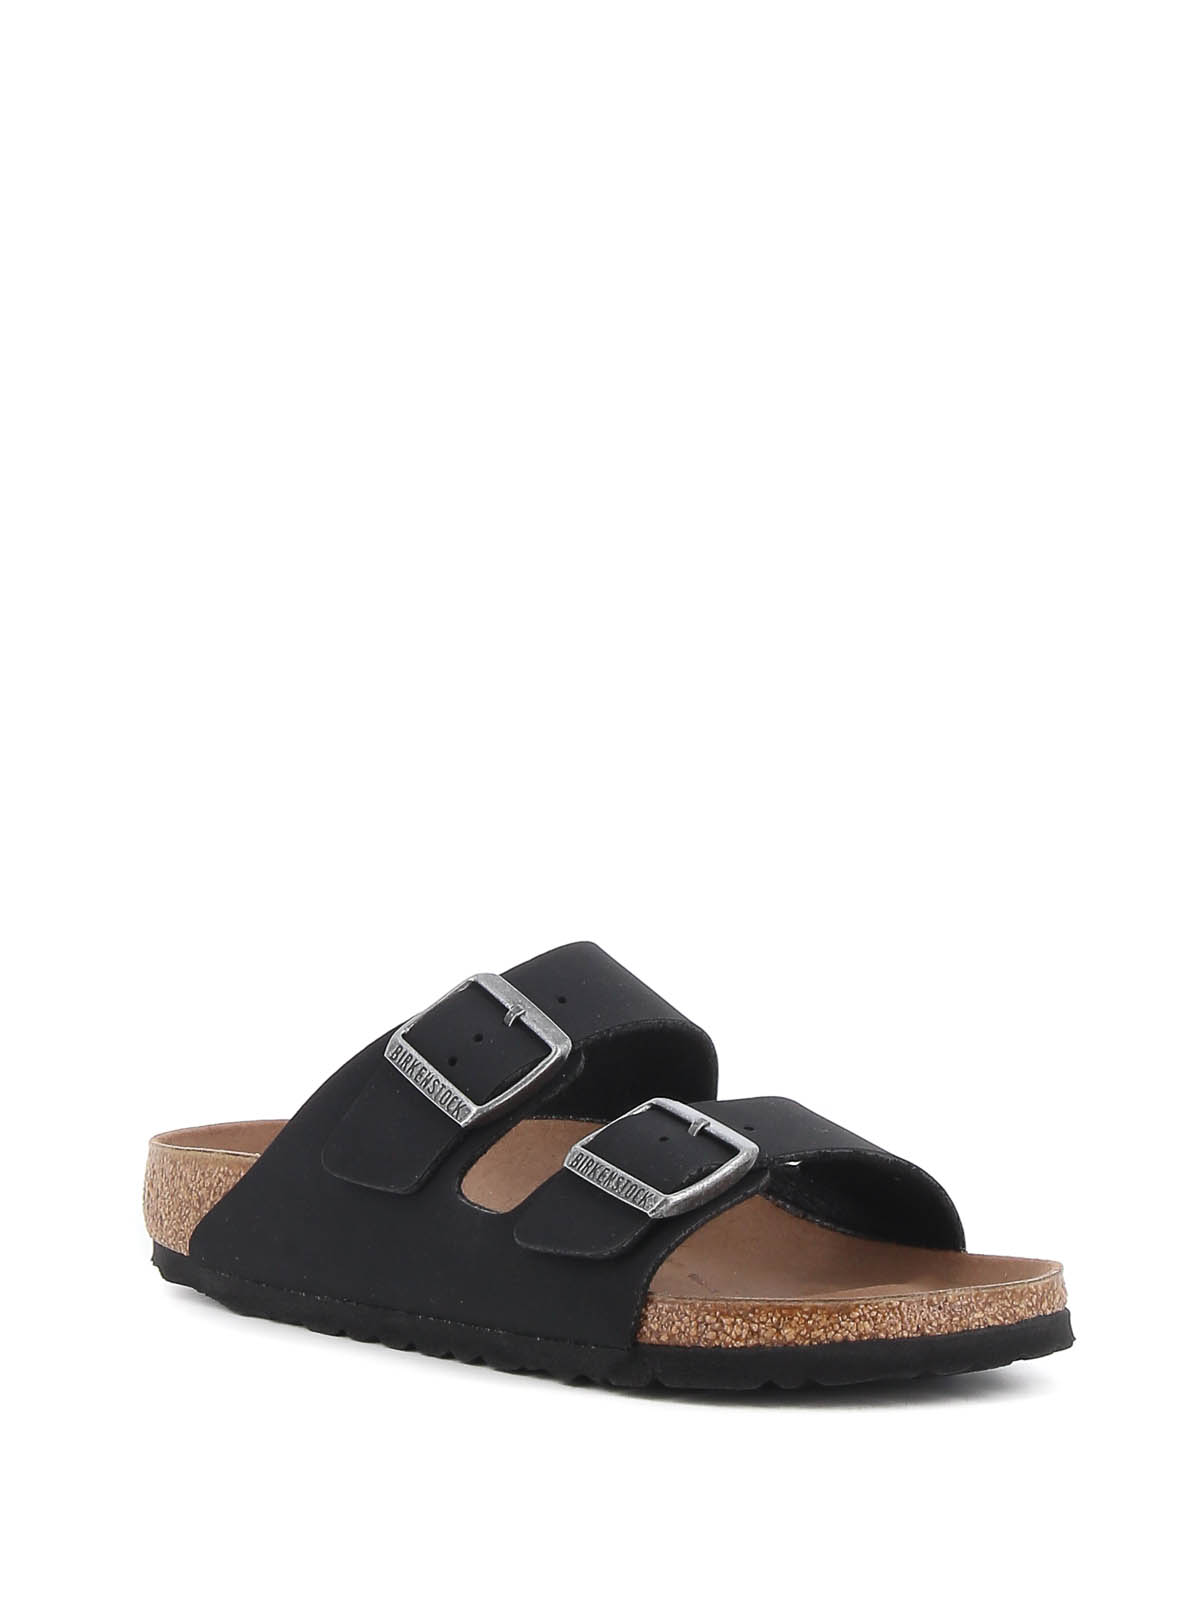 Shop Birkenstock Arizona Bs Sandals In Black